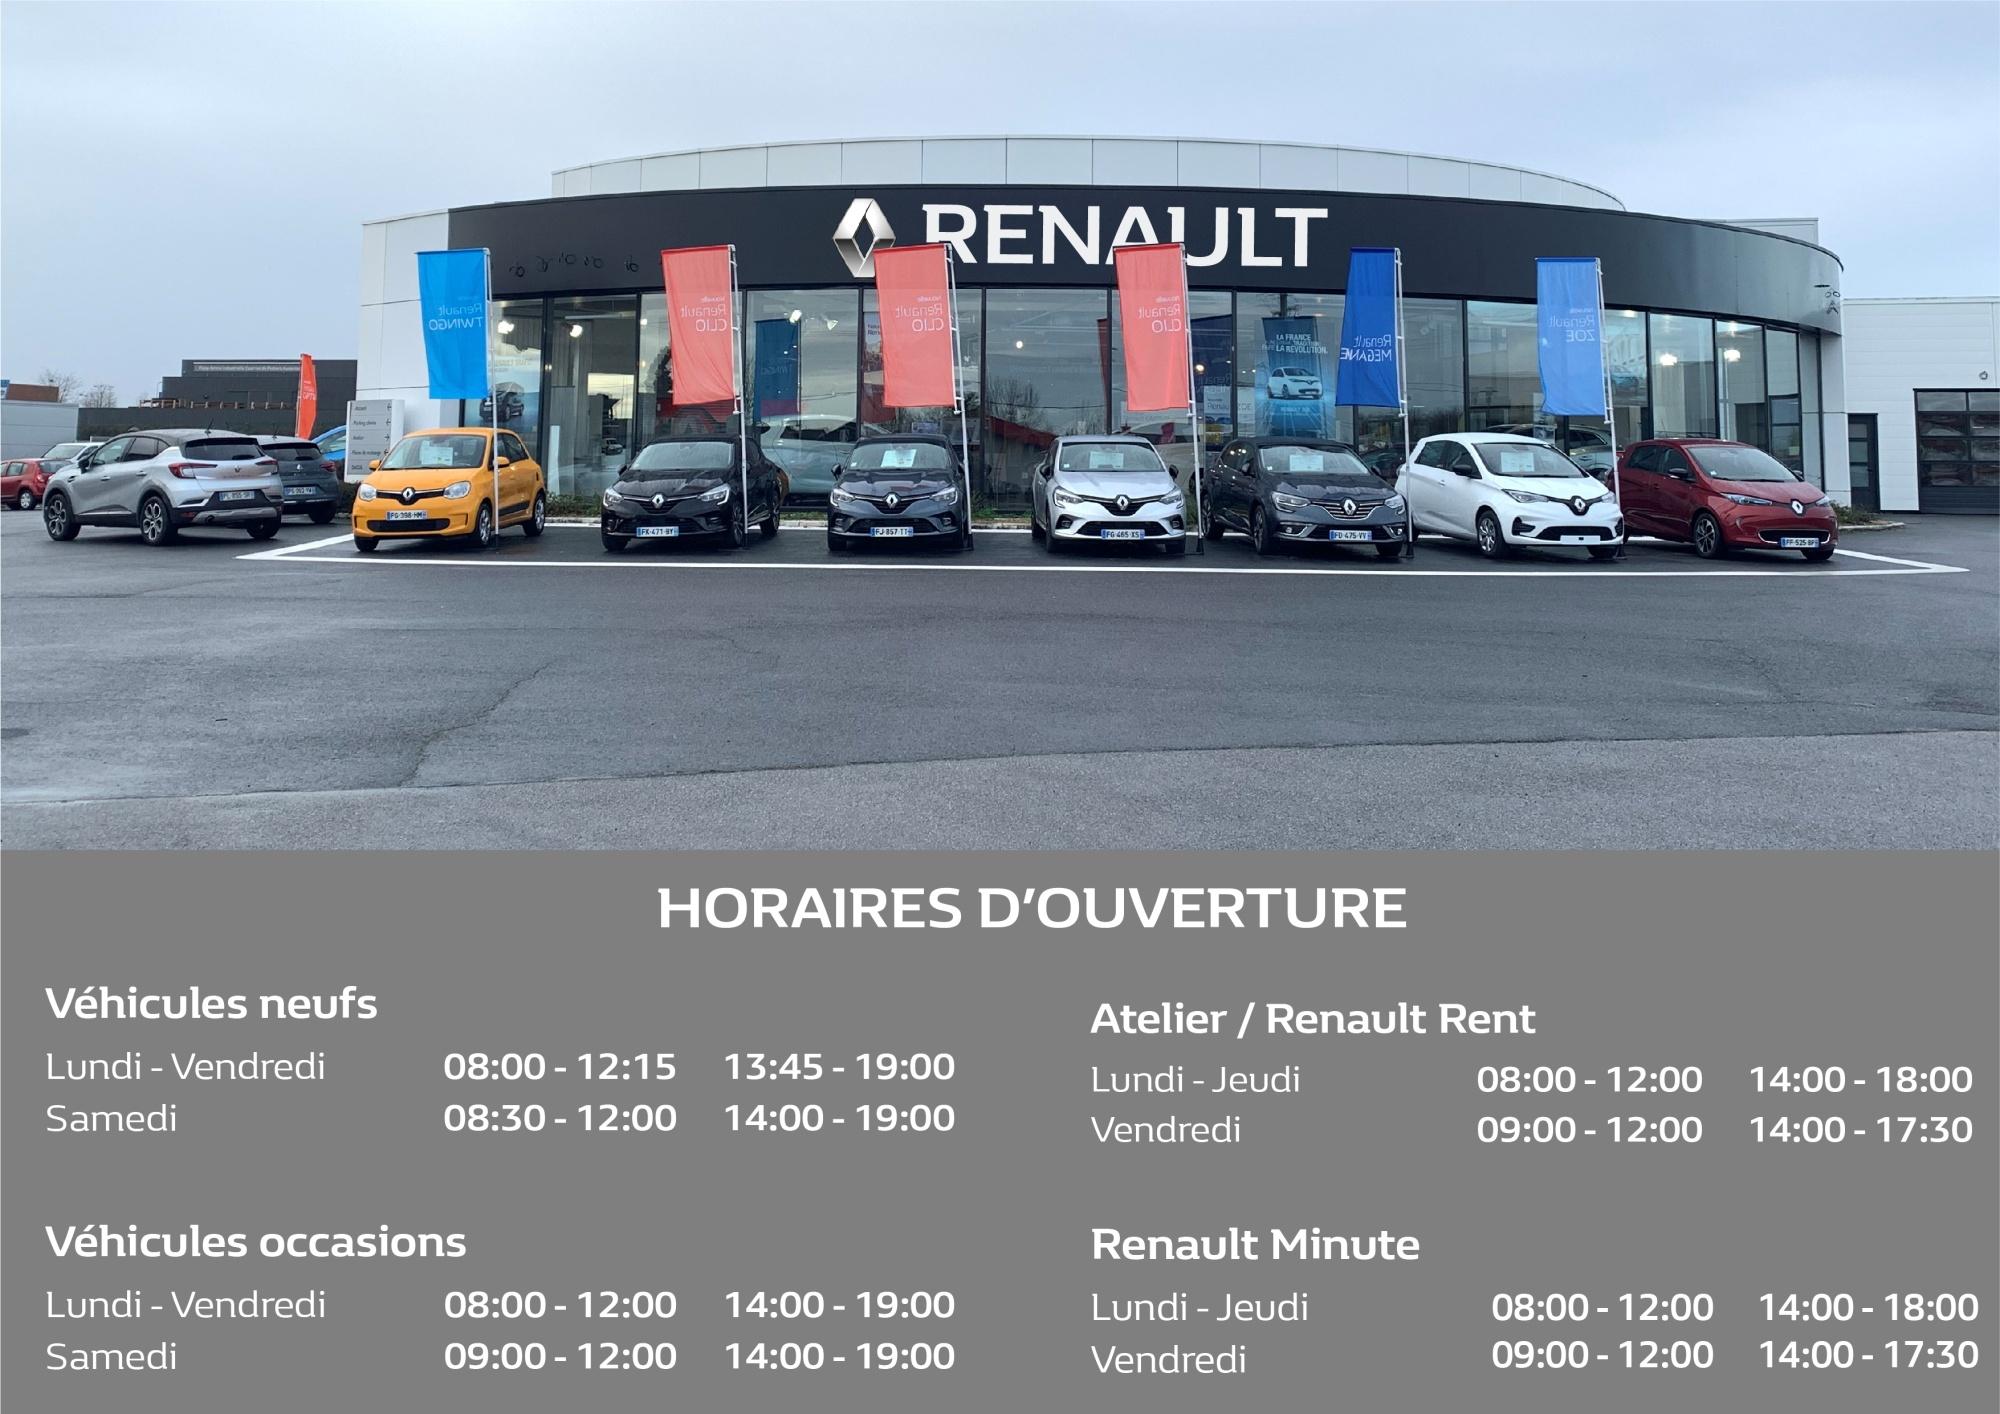 Renault Migné Auxances